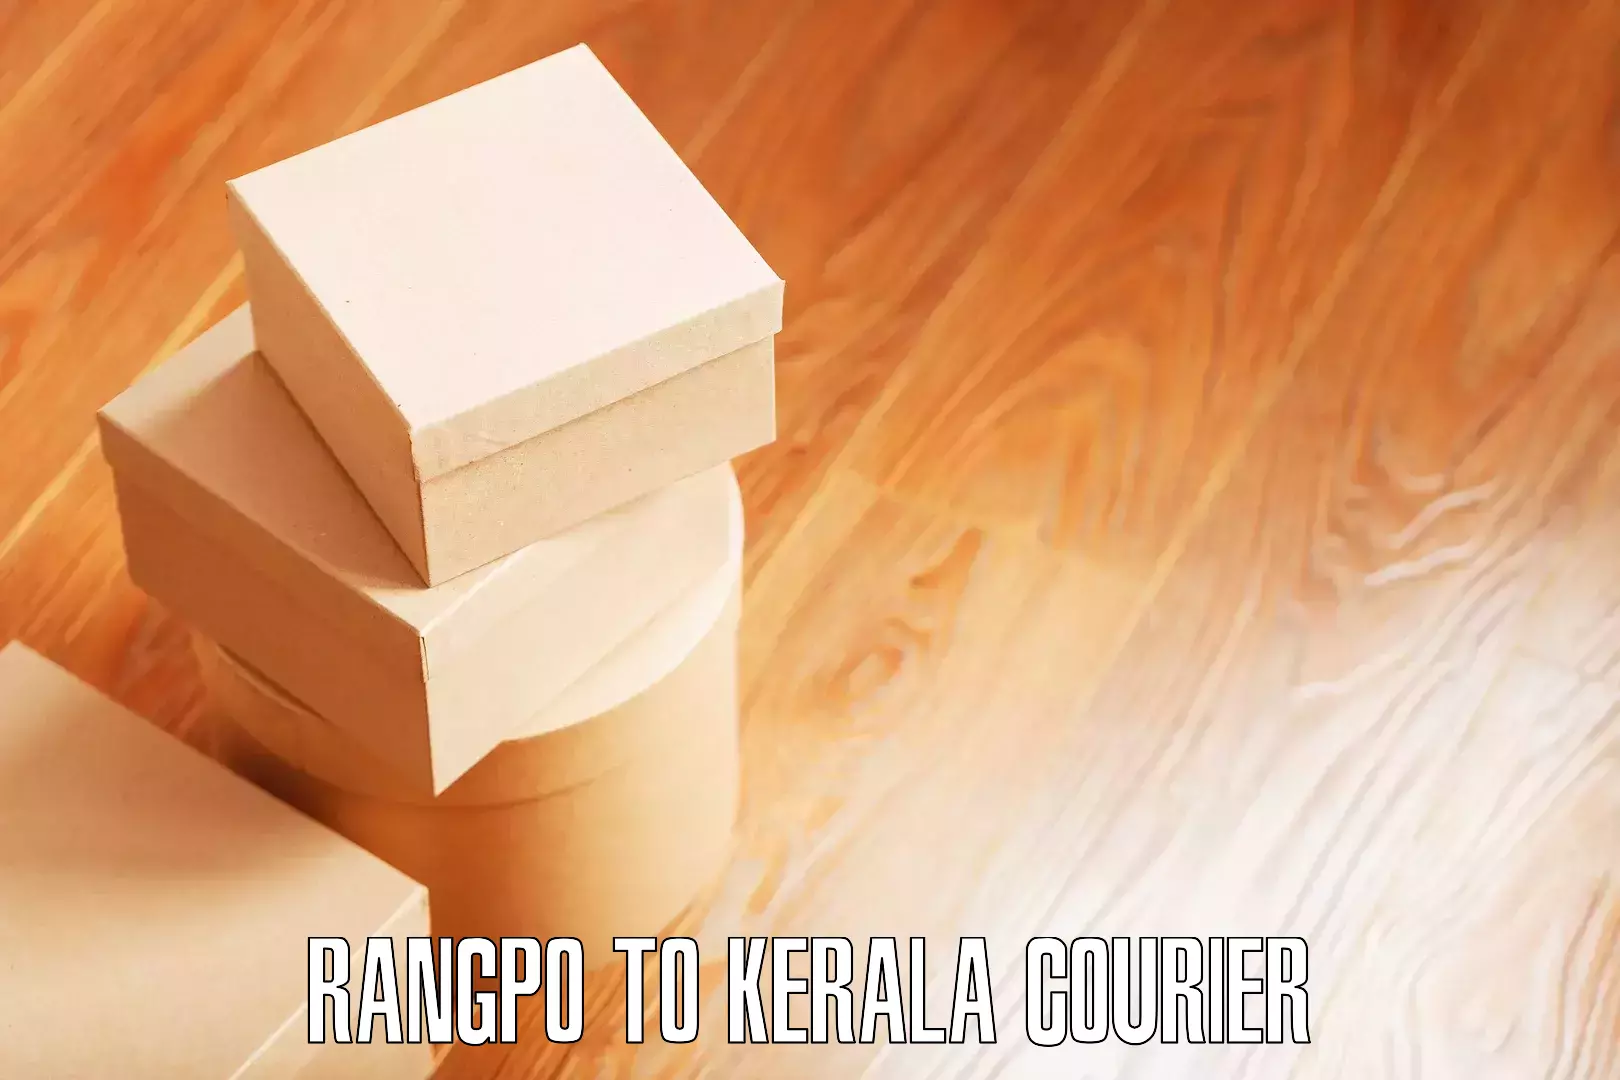 Full-service relocation Rangpo to Kerala